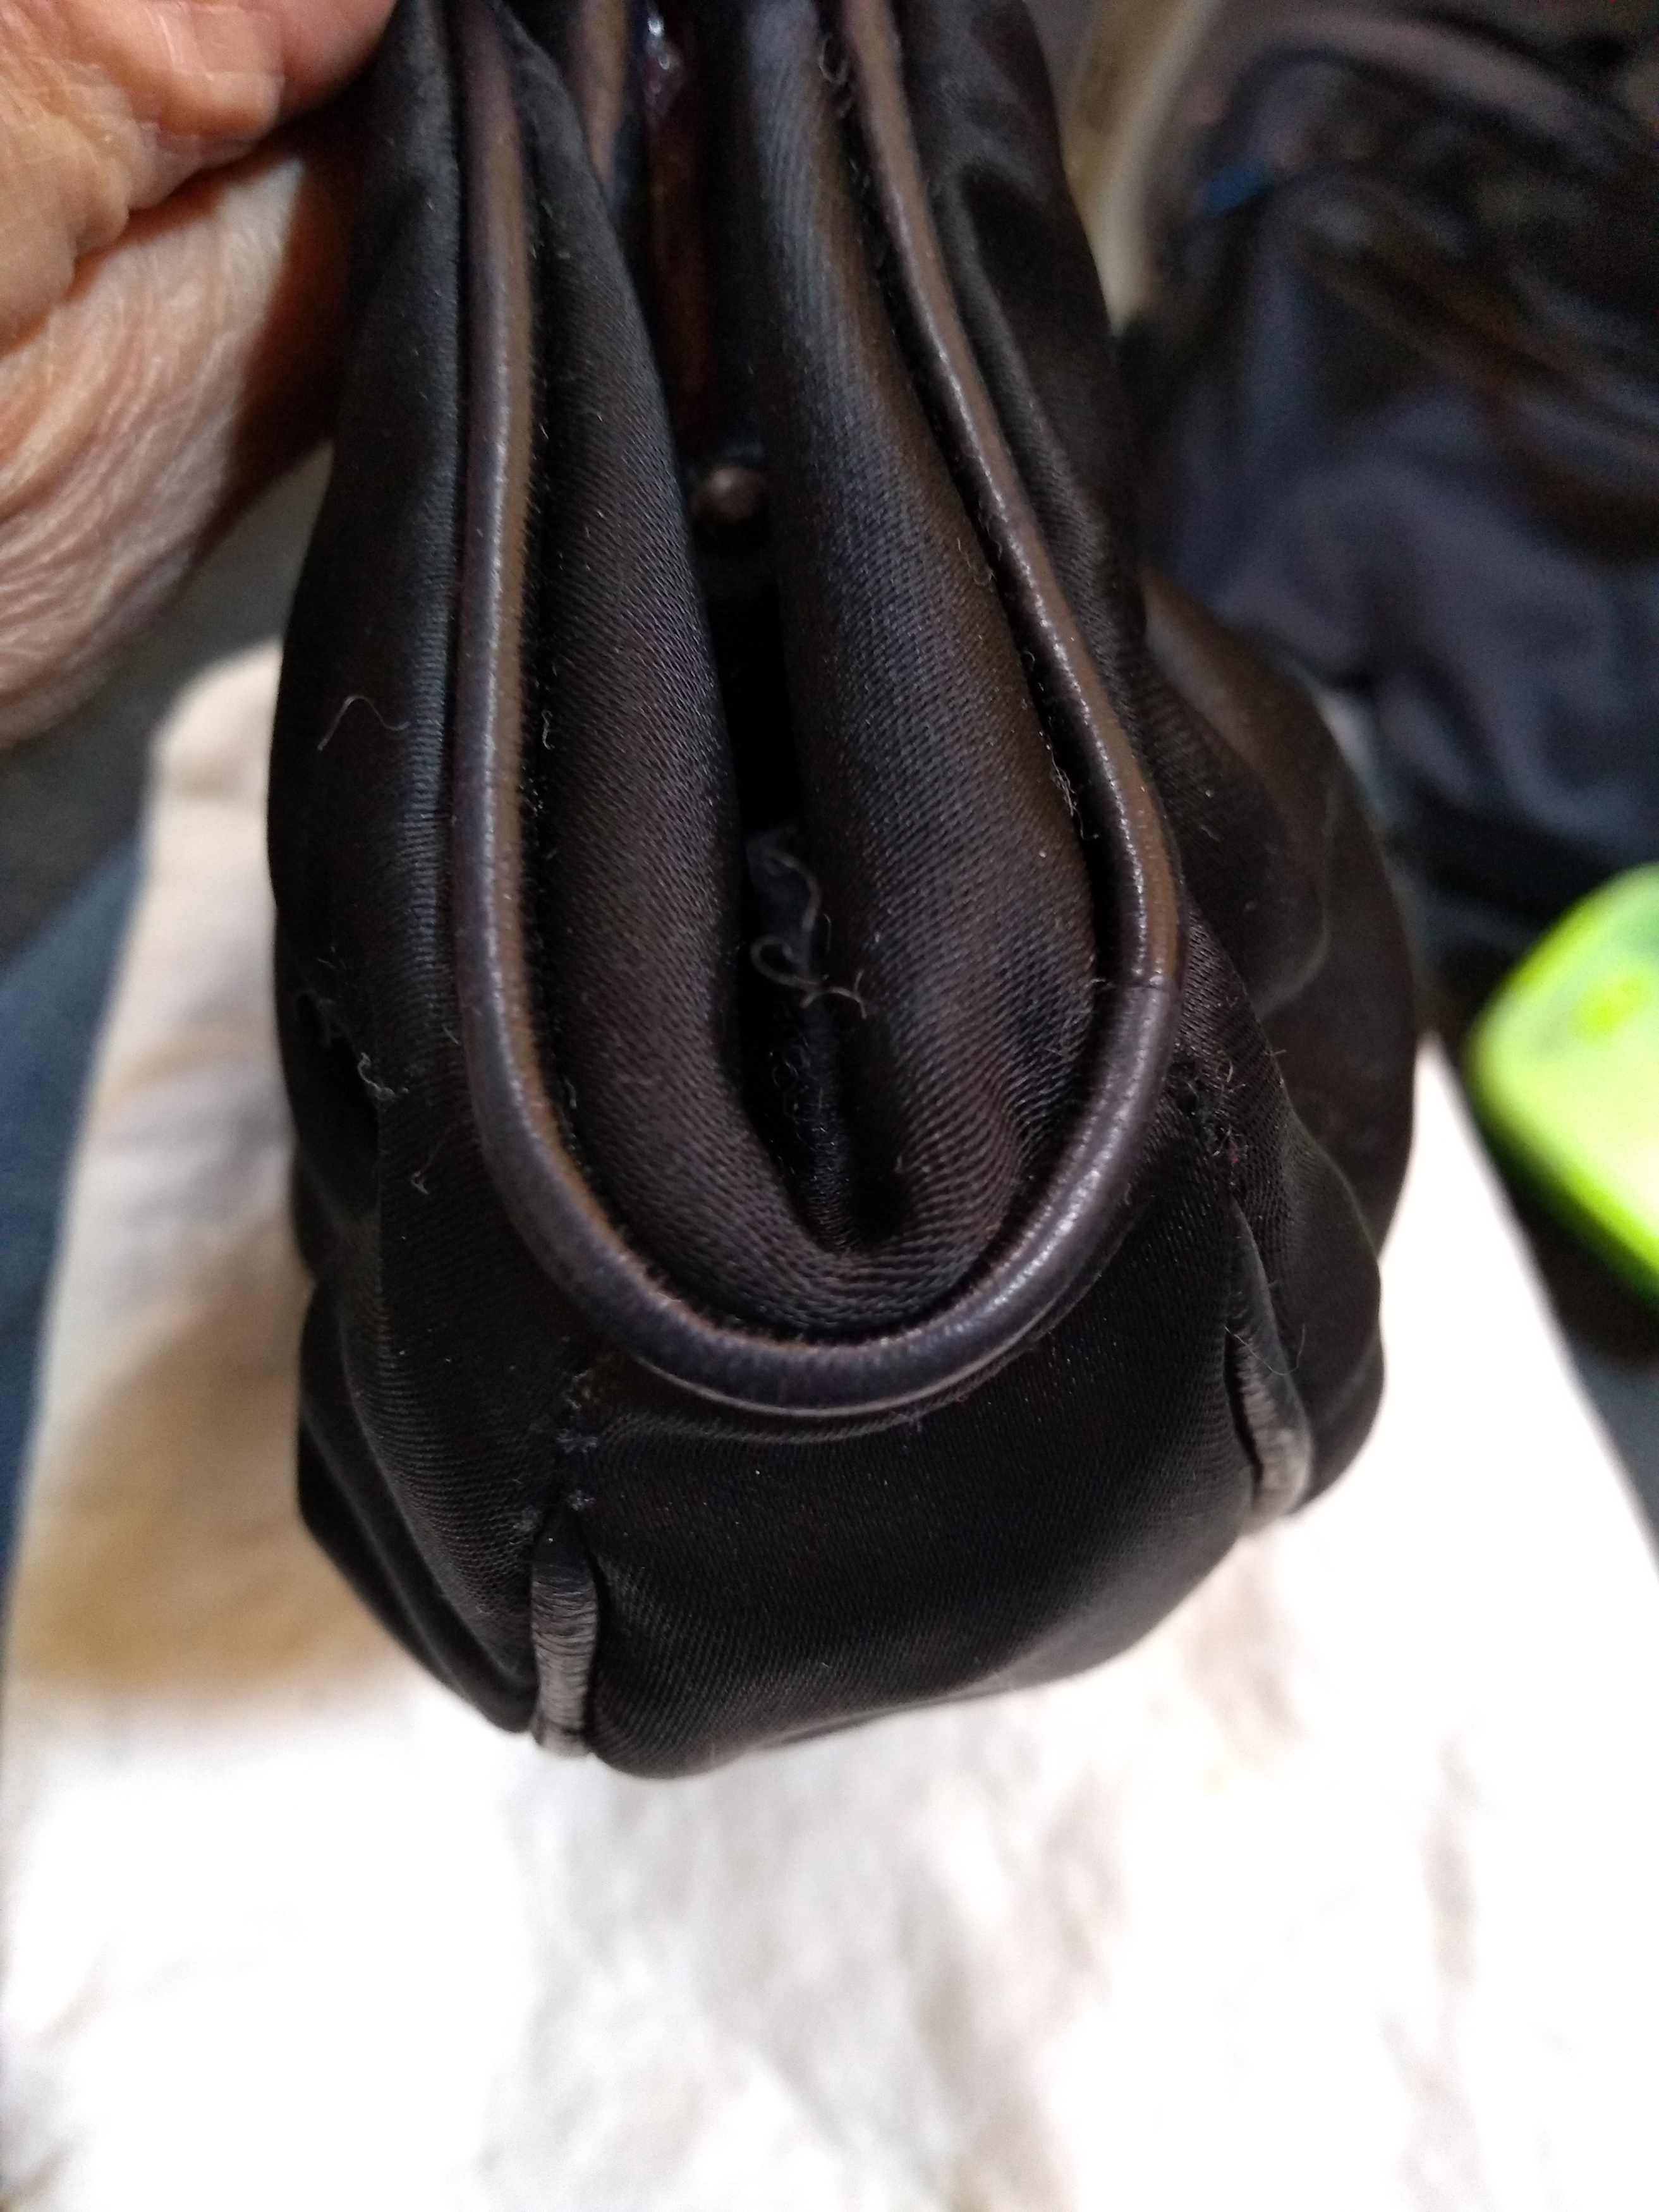 Lot 262 - A vintage Chanel black satin evening bag